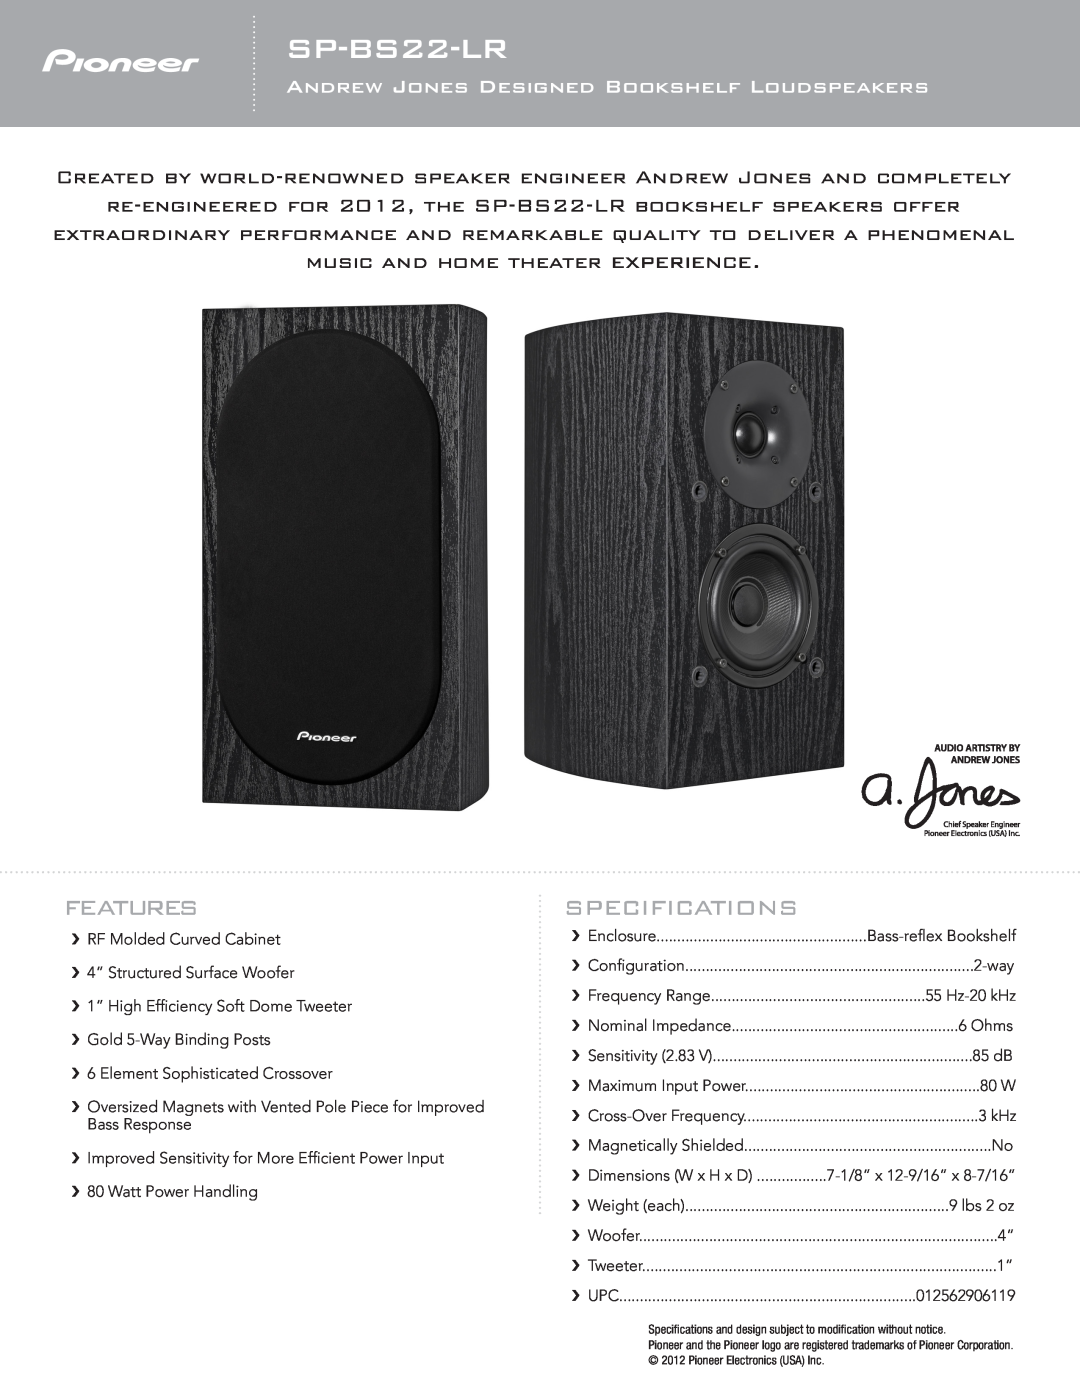 Pioneer SP-BS22-LR specifications Features, Andrew Jones Designed Bookshelf Loudspeakers, Specifications 